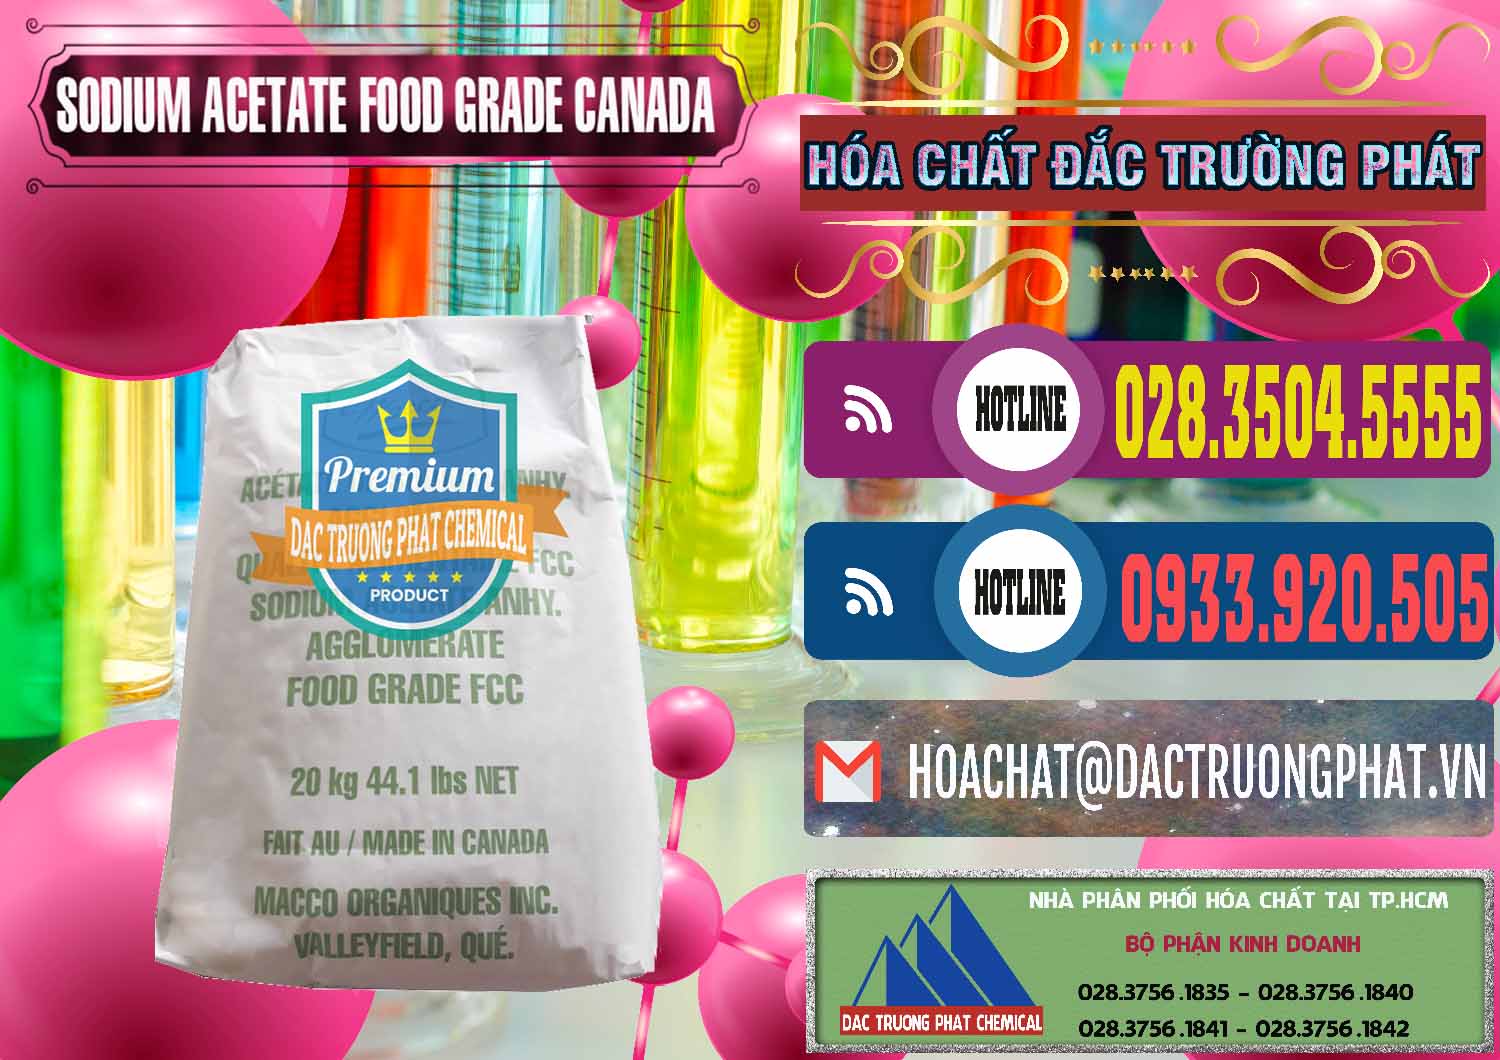 Cty bán & cung cấp Sodium Acetate - Natri Acetate Food Grade Canada - 0282 - Công ty cung cấp _ bán hóa chất tại TP.HCM - muabanhoachat.com.vn